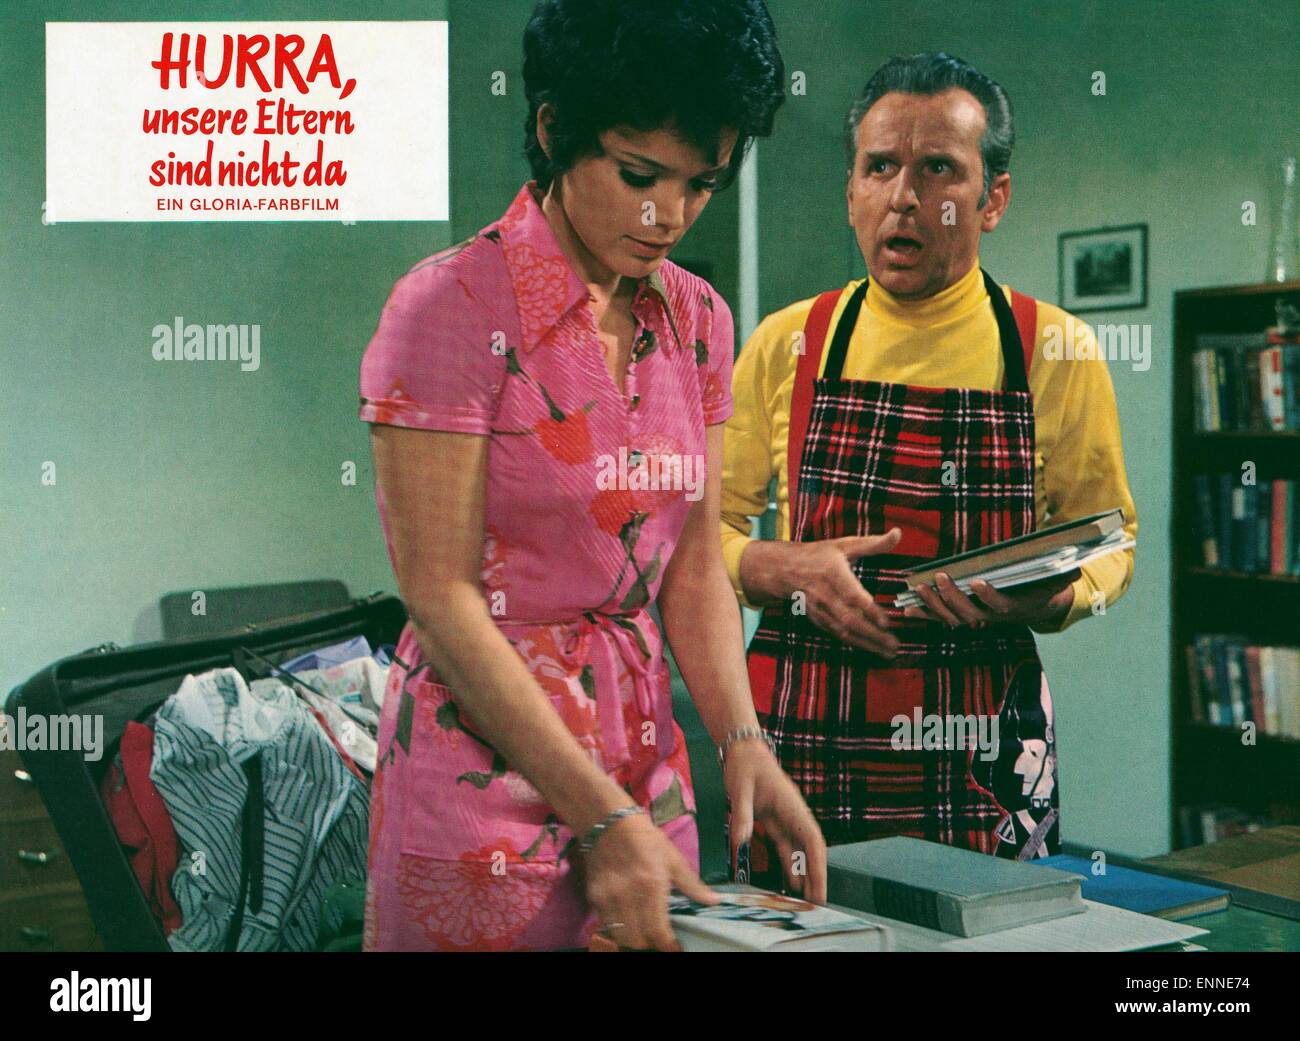 Hurra, unsere Eltern sind nicht da, Deutschland 1970, Regie : Wolfgang Schleif, acteurs : Uschi Glas, Georg Thomalla Banque D'Images